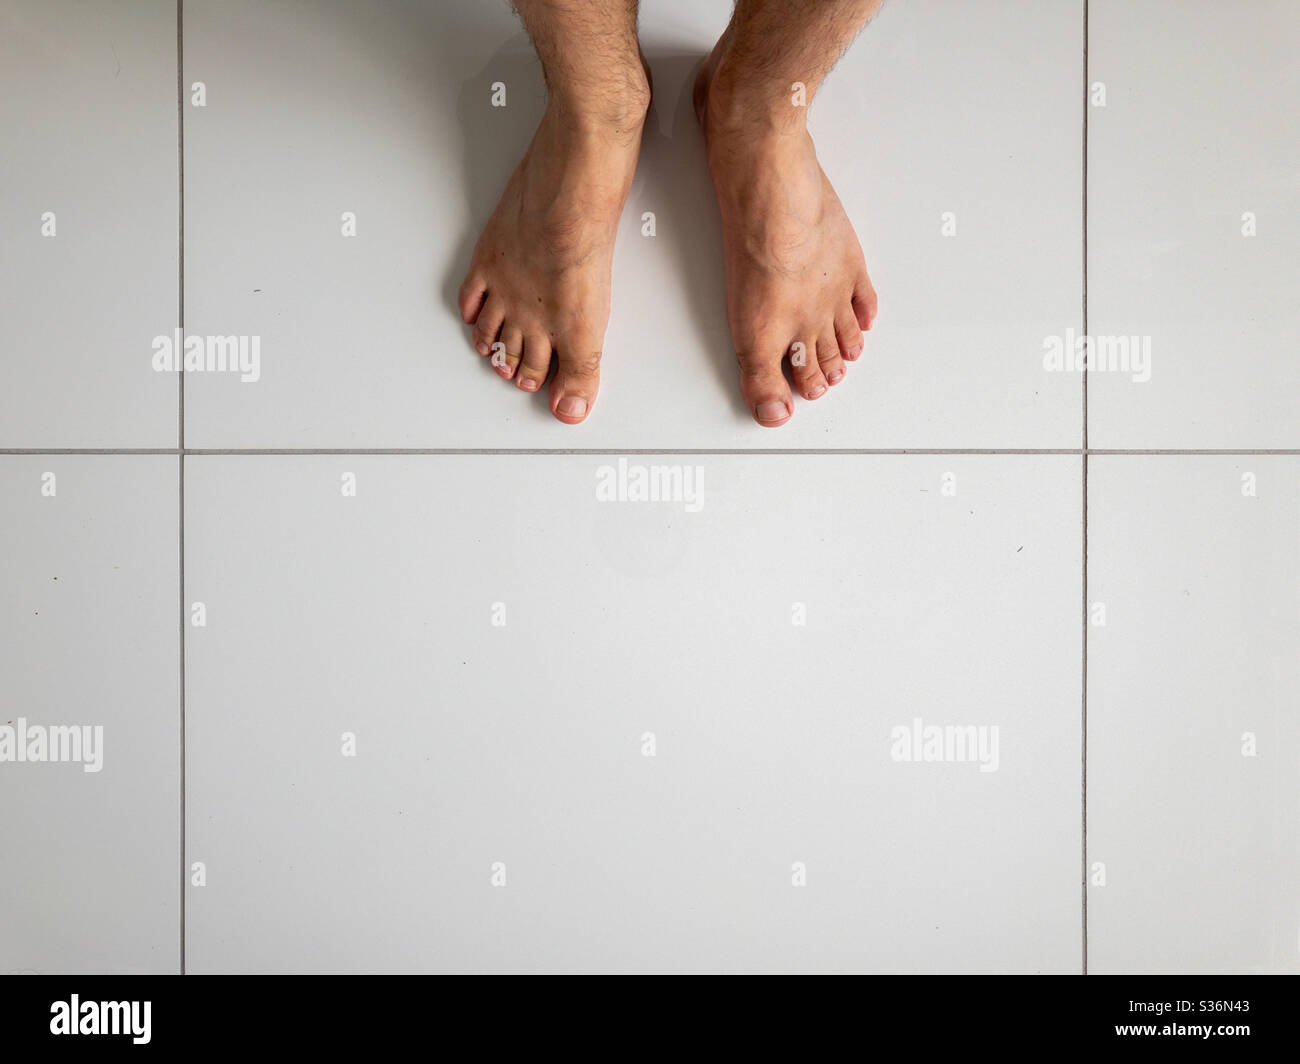 Die Füße des Menschen auf weißen Keramikfliesen Stockfoto